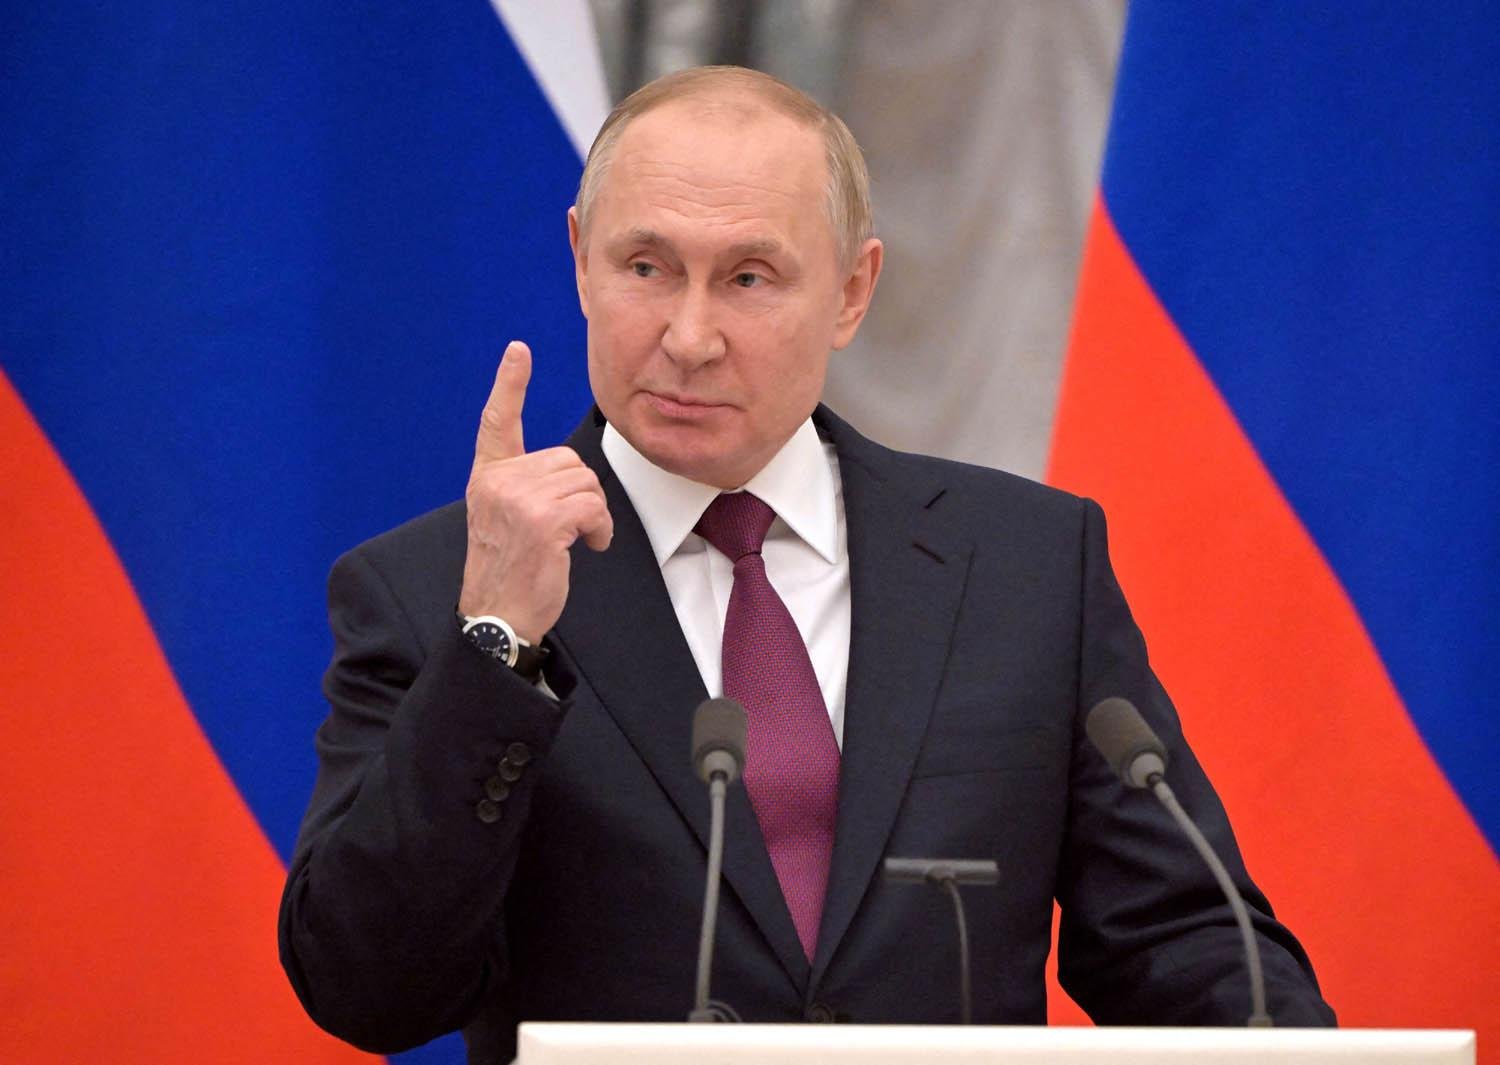 بوتين: السوق الروسية لم تنهر بسبب عقوبات الغرب التي أثبتت "فشلها"